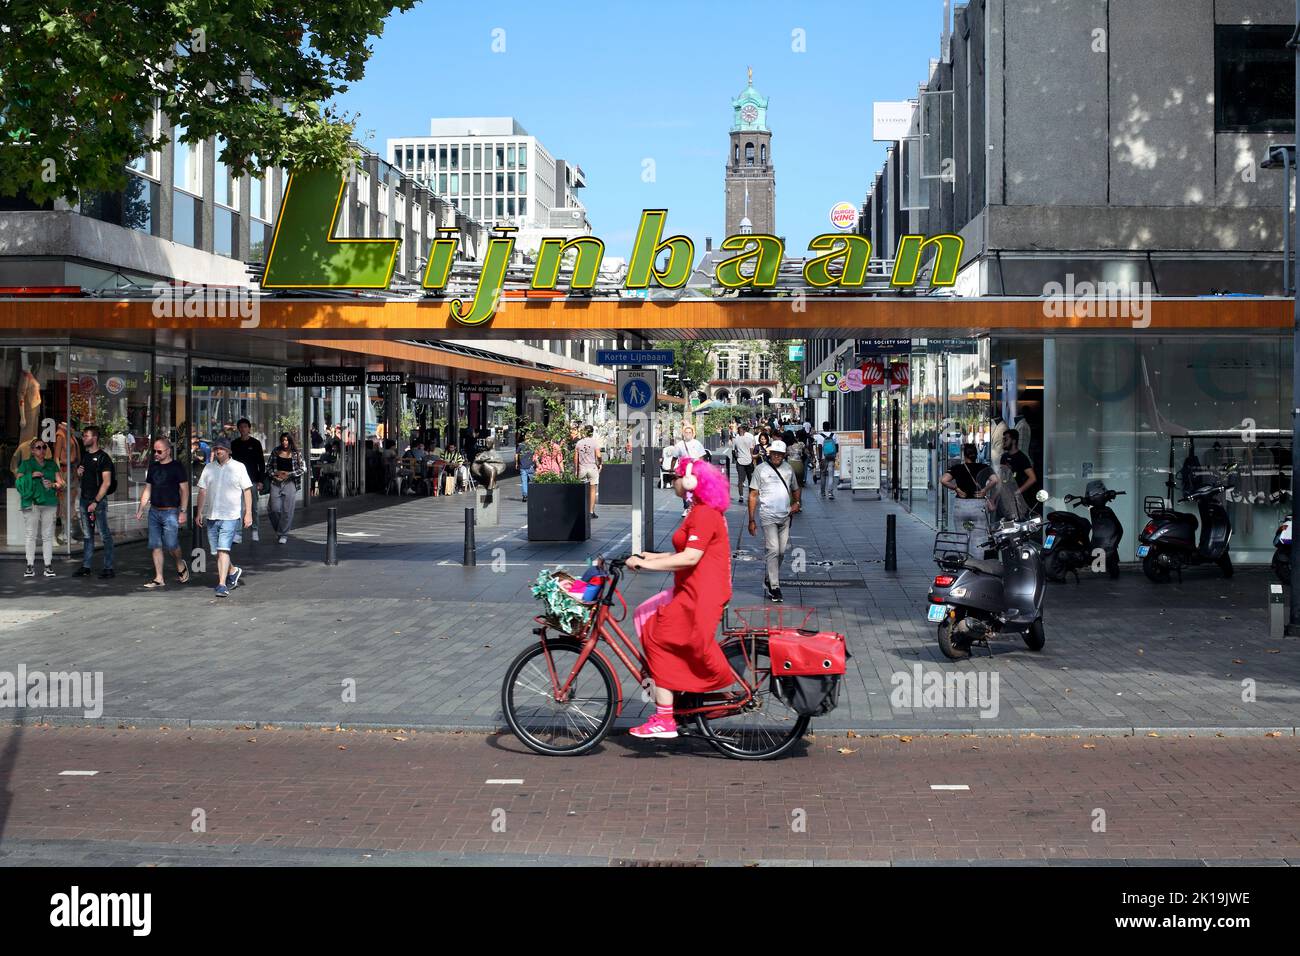 Carril bici junto a la zona comercial Lijnbaan en Rotterdam, Holanda. (Mirando hacia la torre del reloj del Ayuntamiento de Rotterdam). Foto de stock